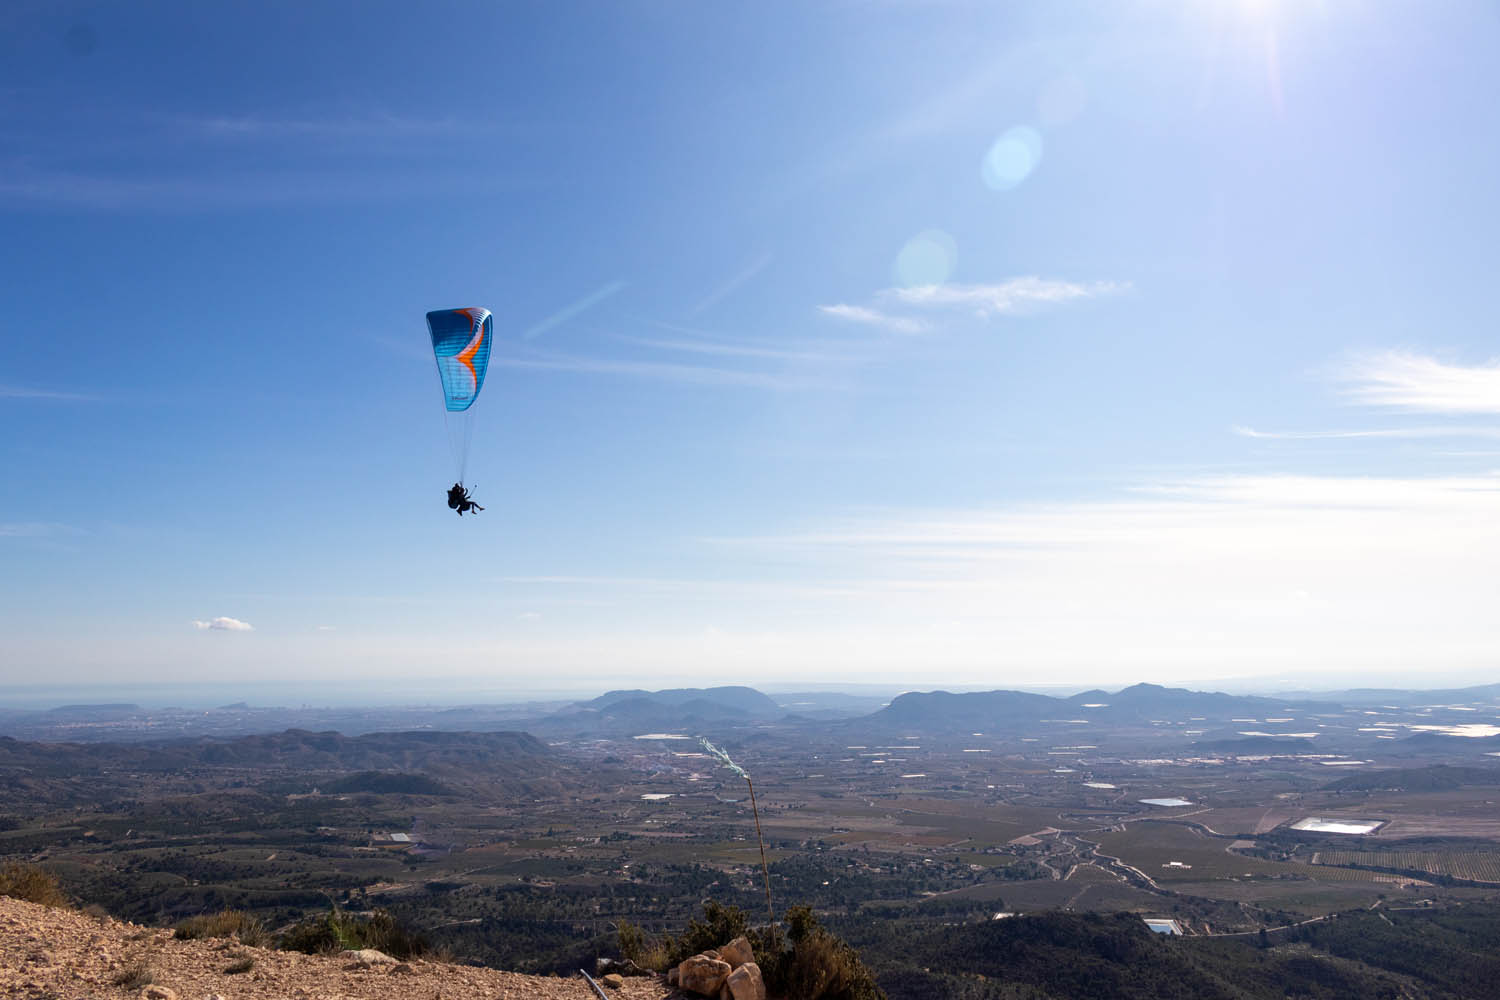 Blauwe paraglider hoog boven de horizon met Alicante op de achtergrond.